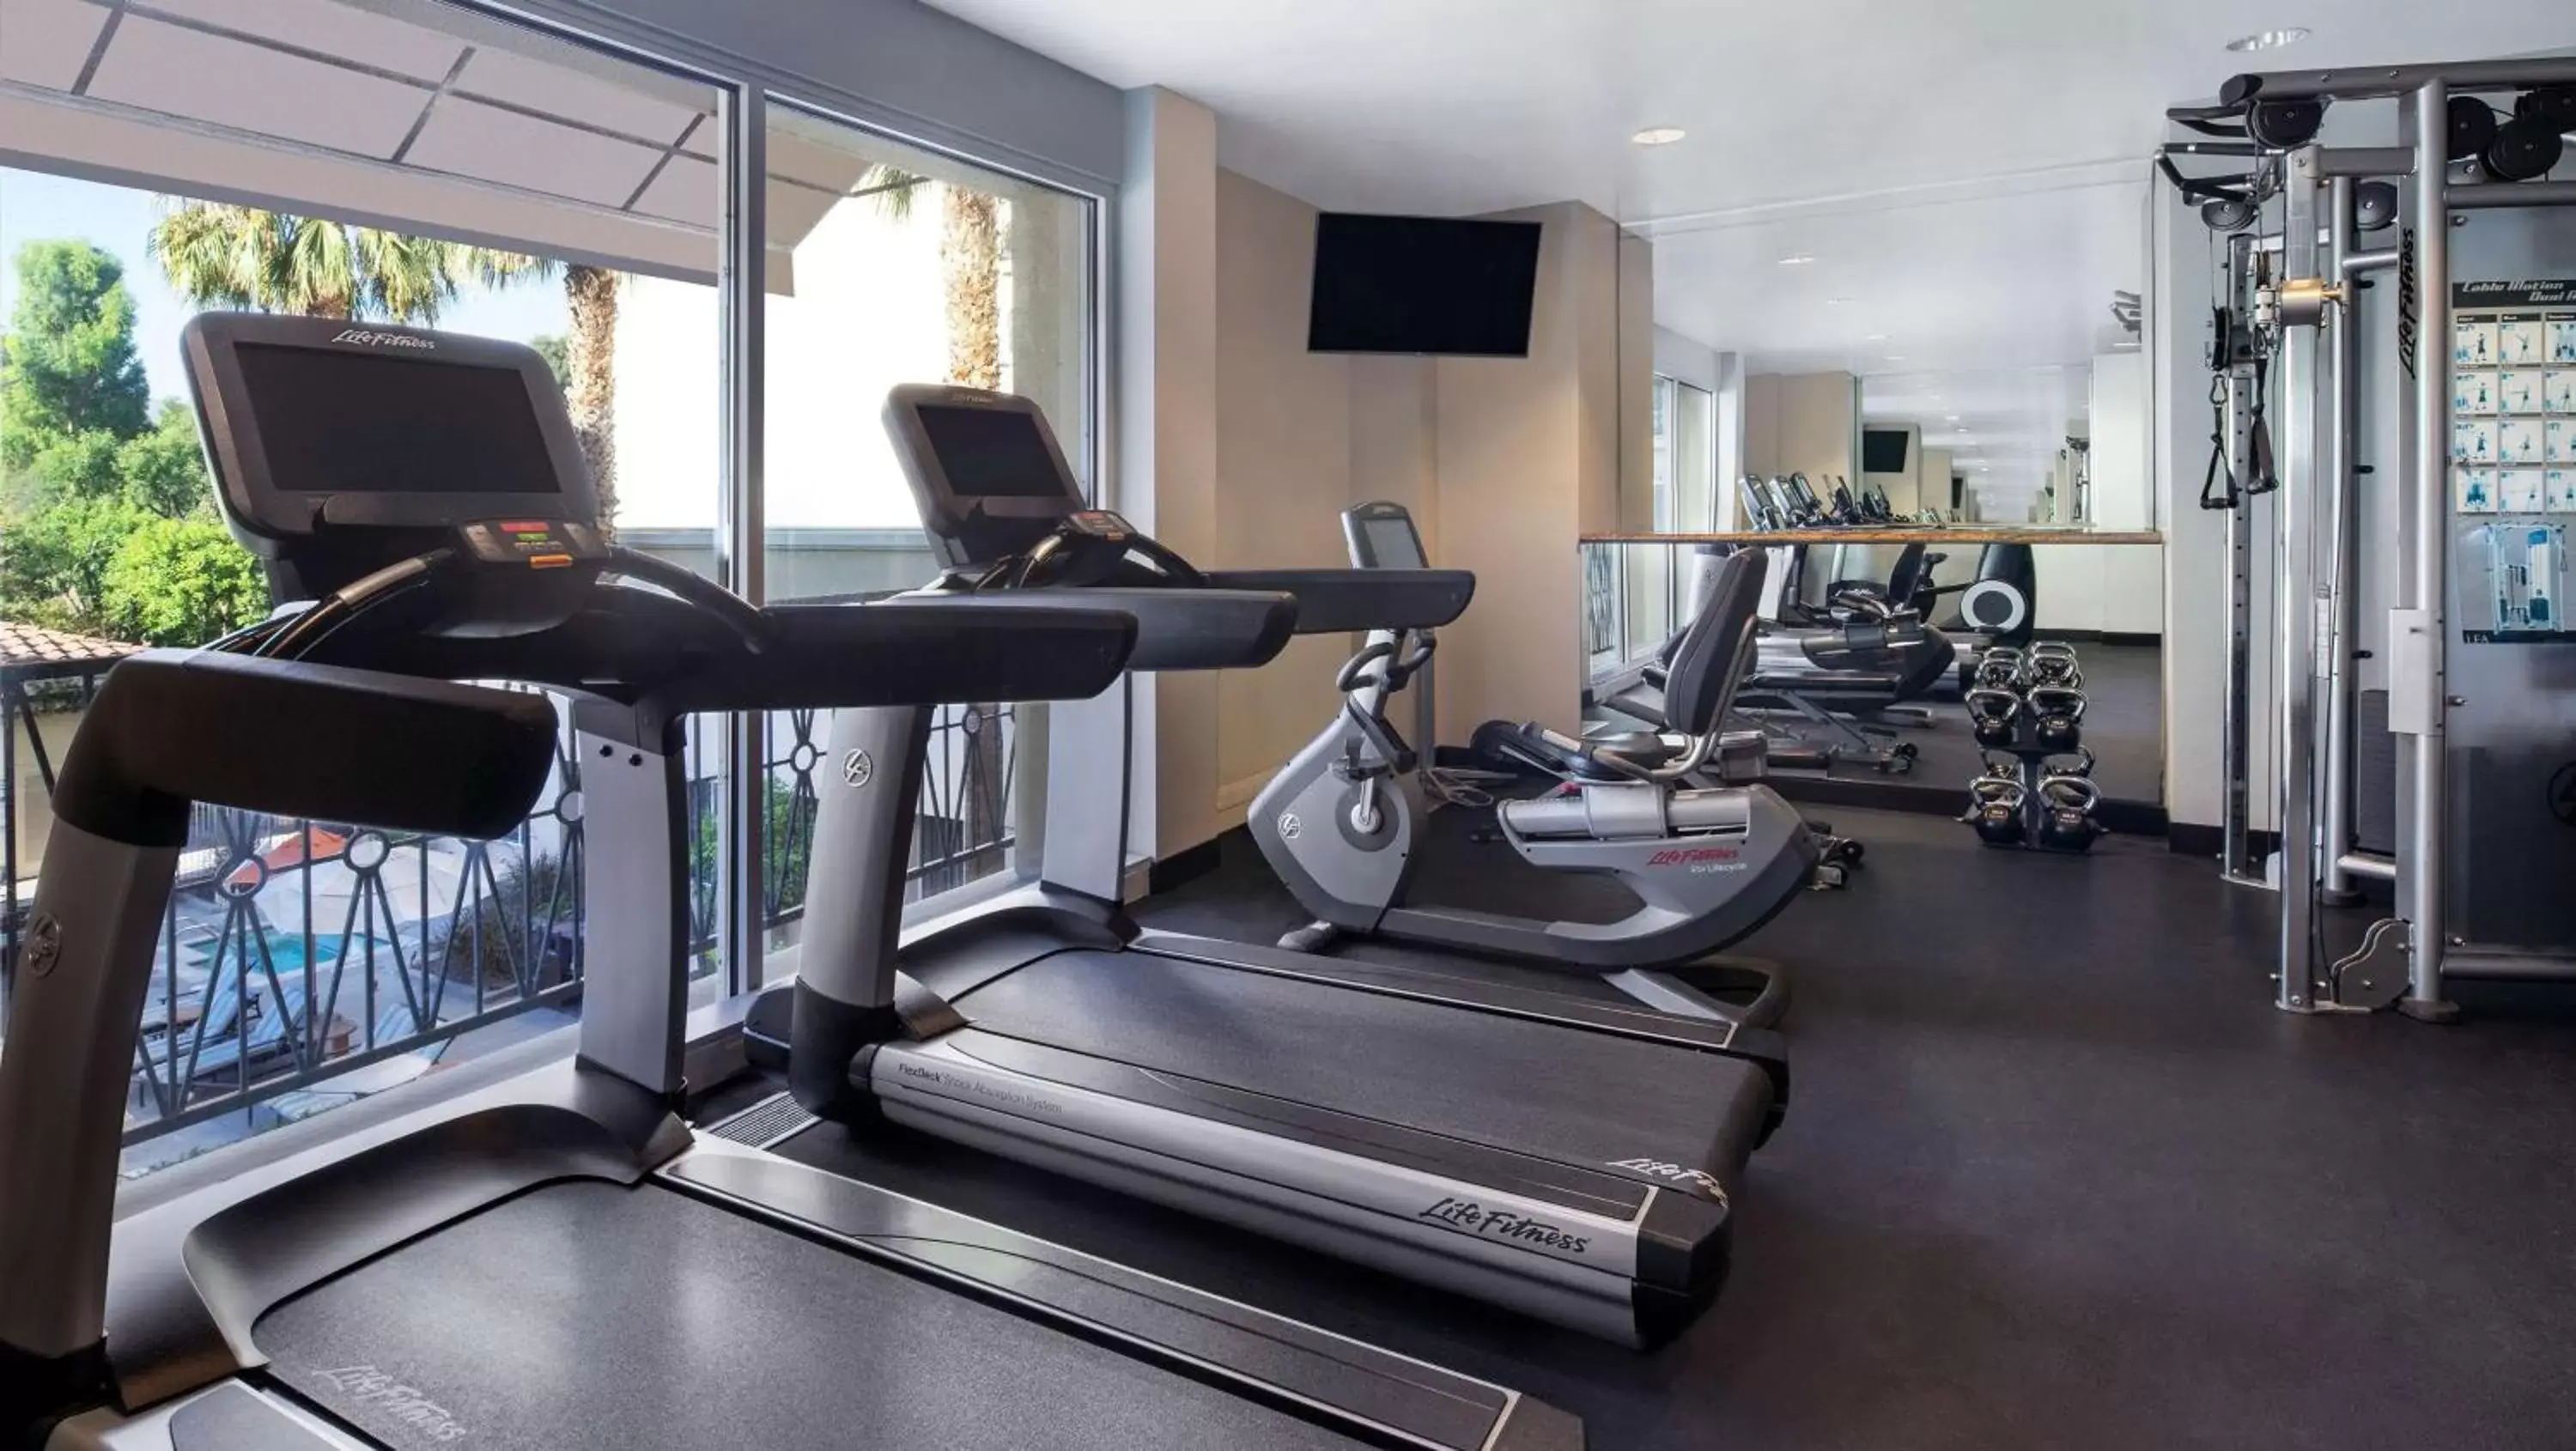 Fitness centre/facilities, Fitness Center/Facilities in Hyatt Regency Valencia